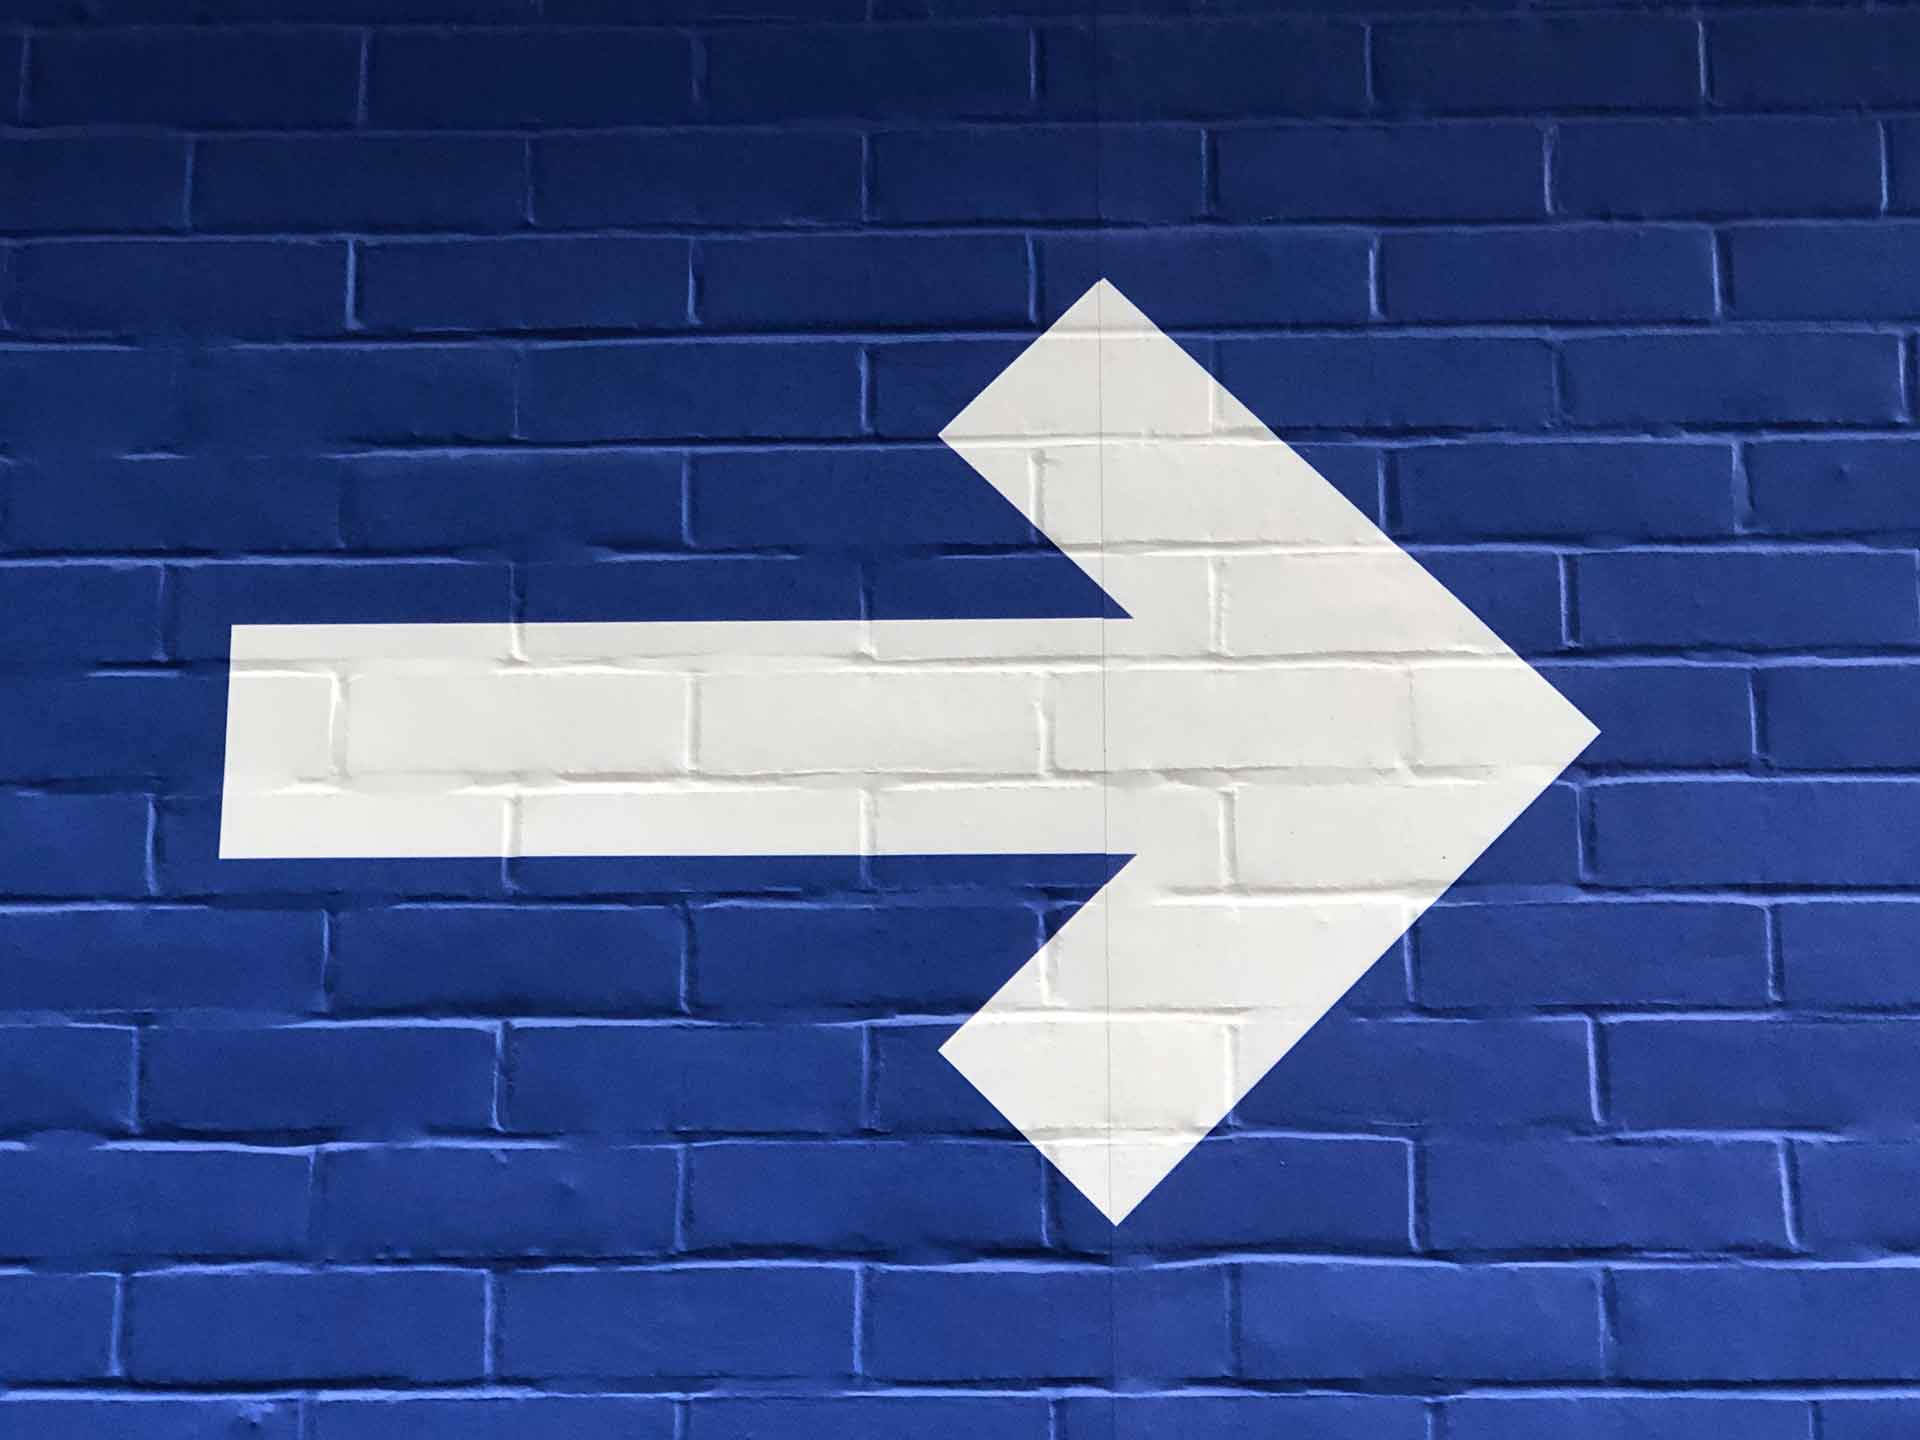 Vit högerpil målad på en blå tegelvägg.